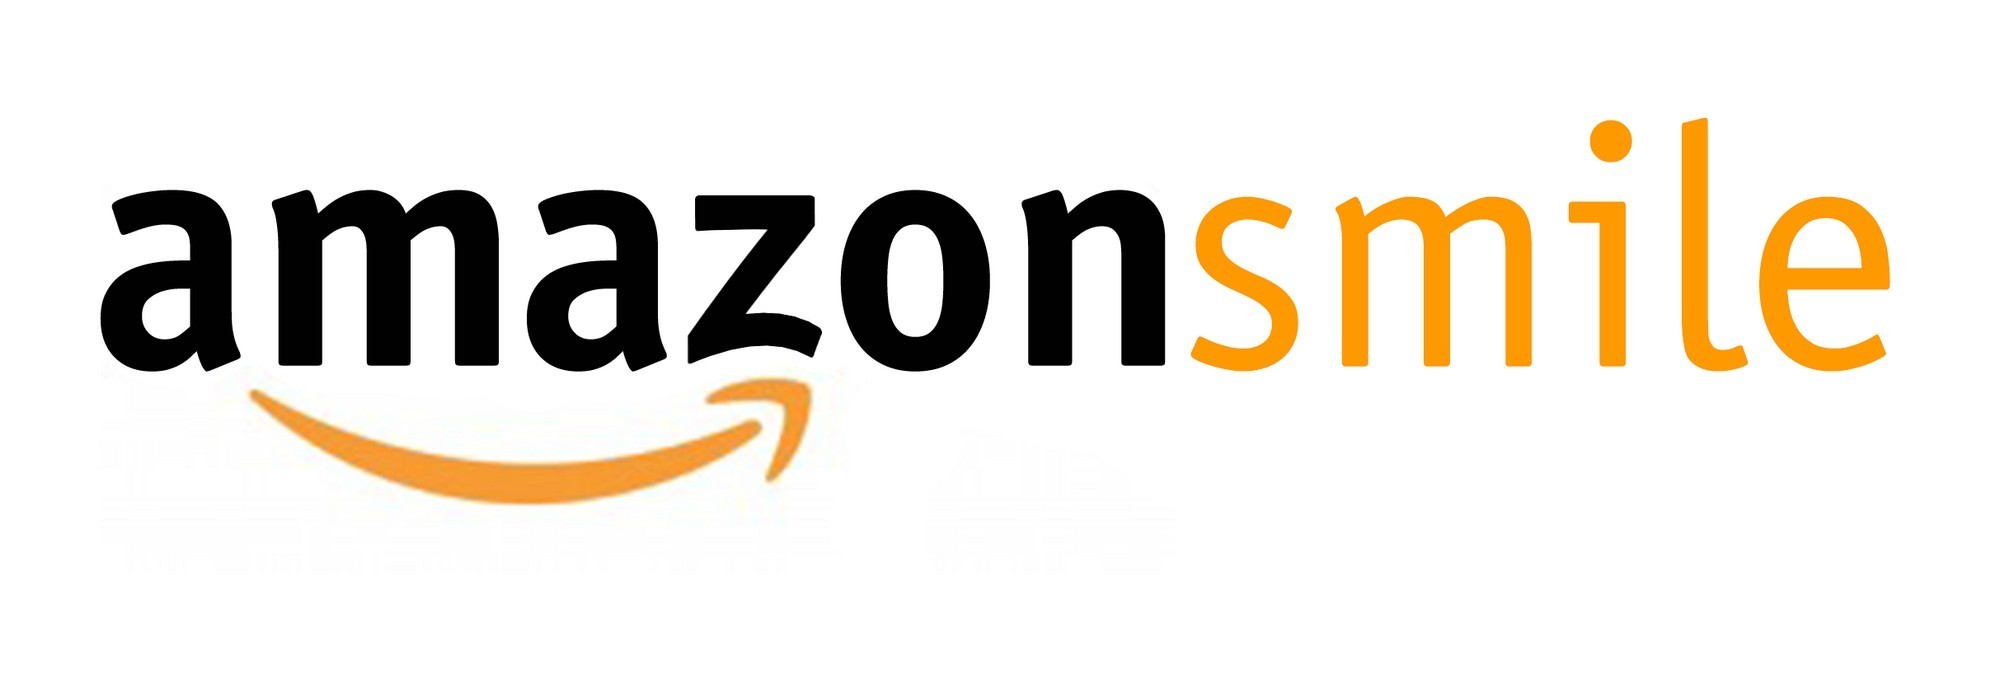 Amazon-Smile-Logo-e1457724074257 | Global Down Syndrome ...